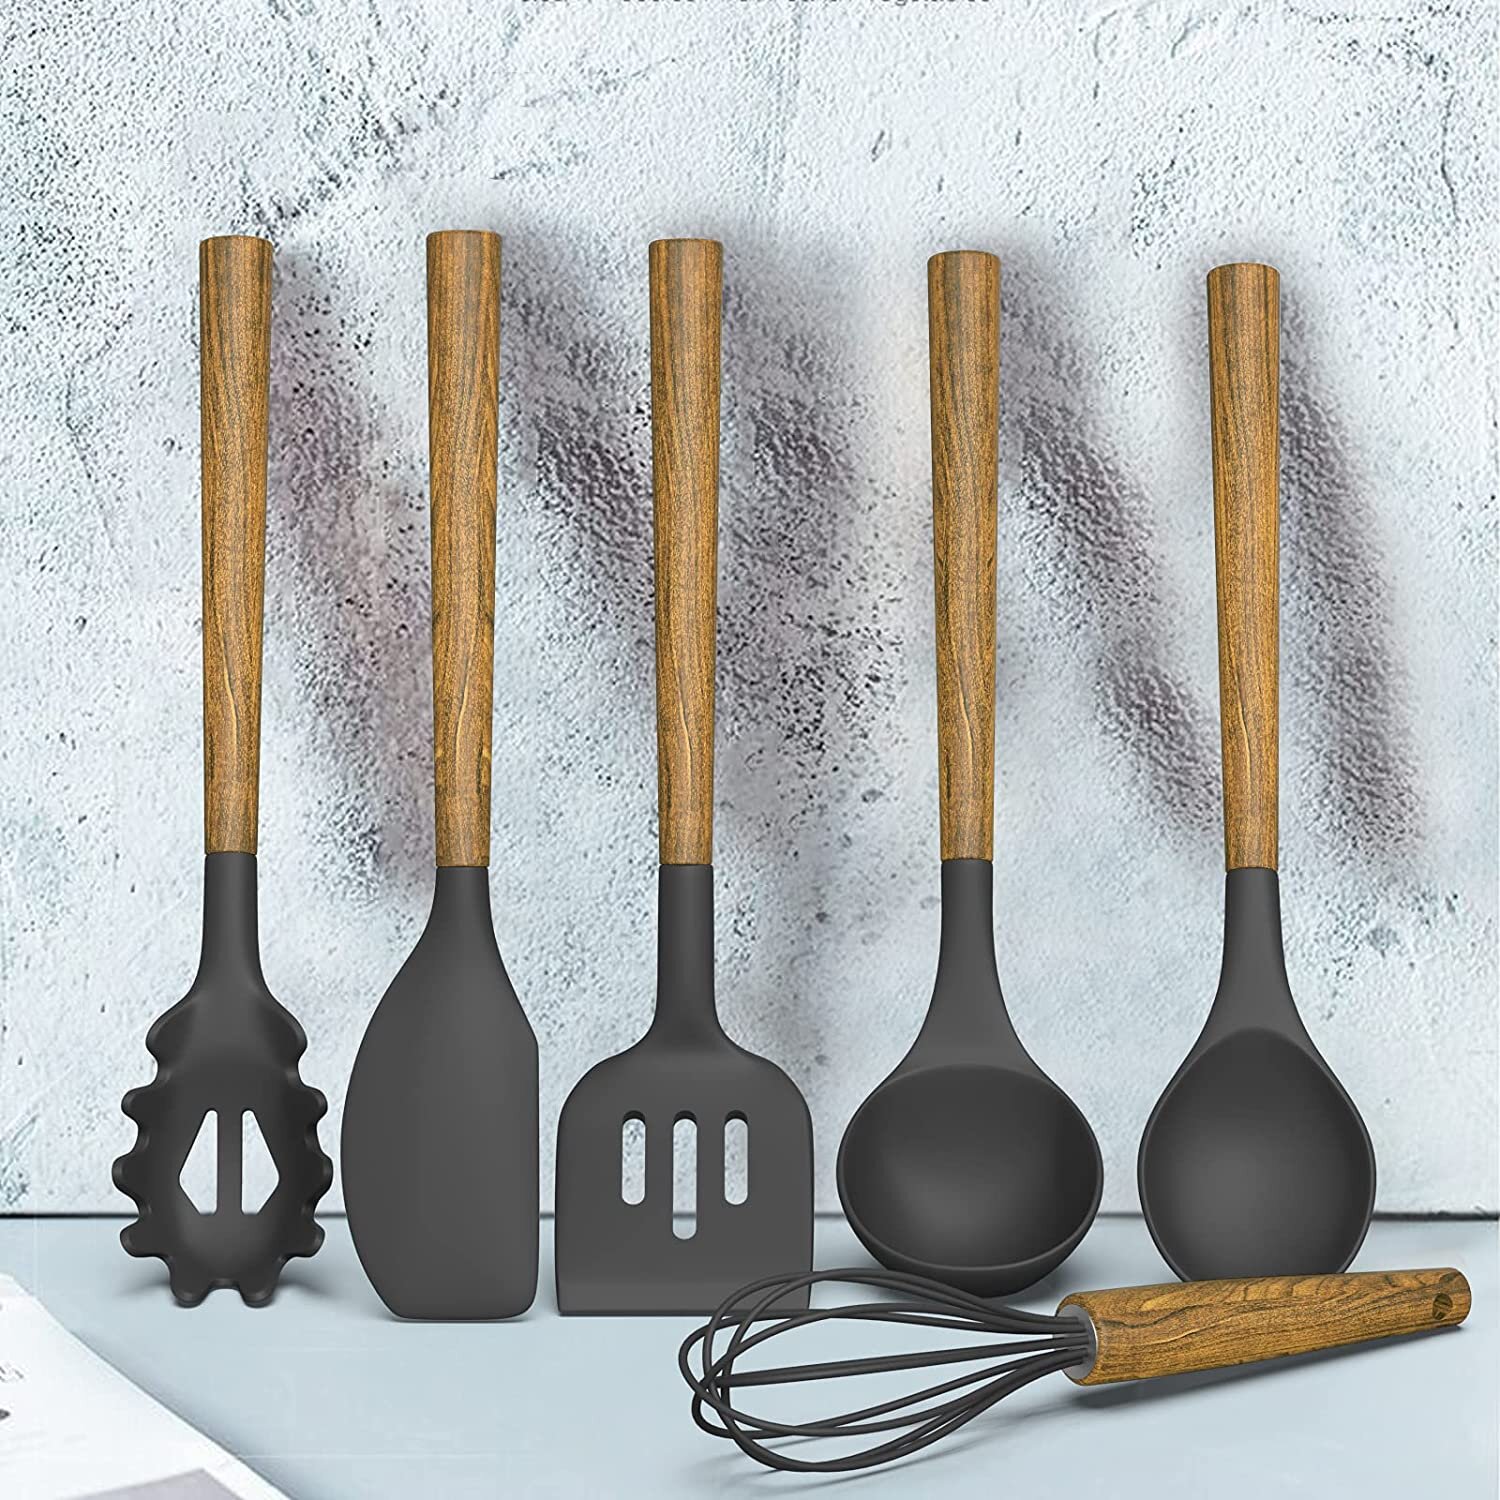 https://assets.wfcdn.com/im/28499418/compr-r85/1699/169969471/8-piece-silicone-assorted-kitchen-utensil-set.jpg